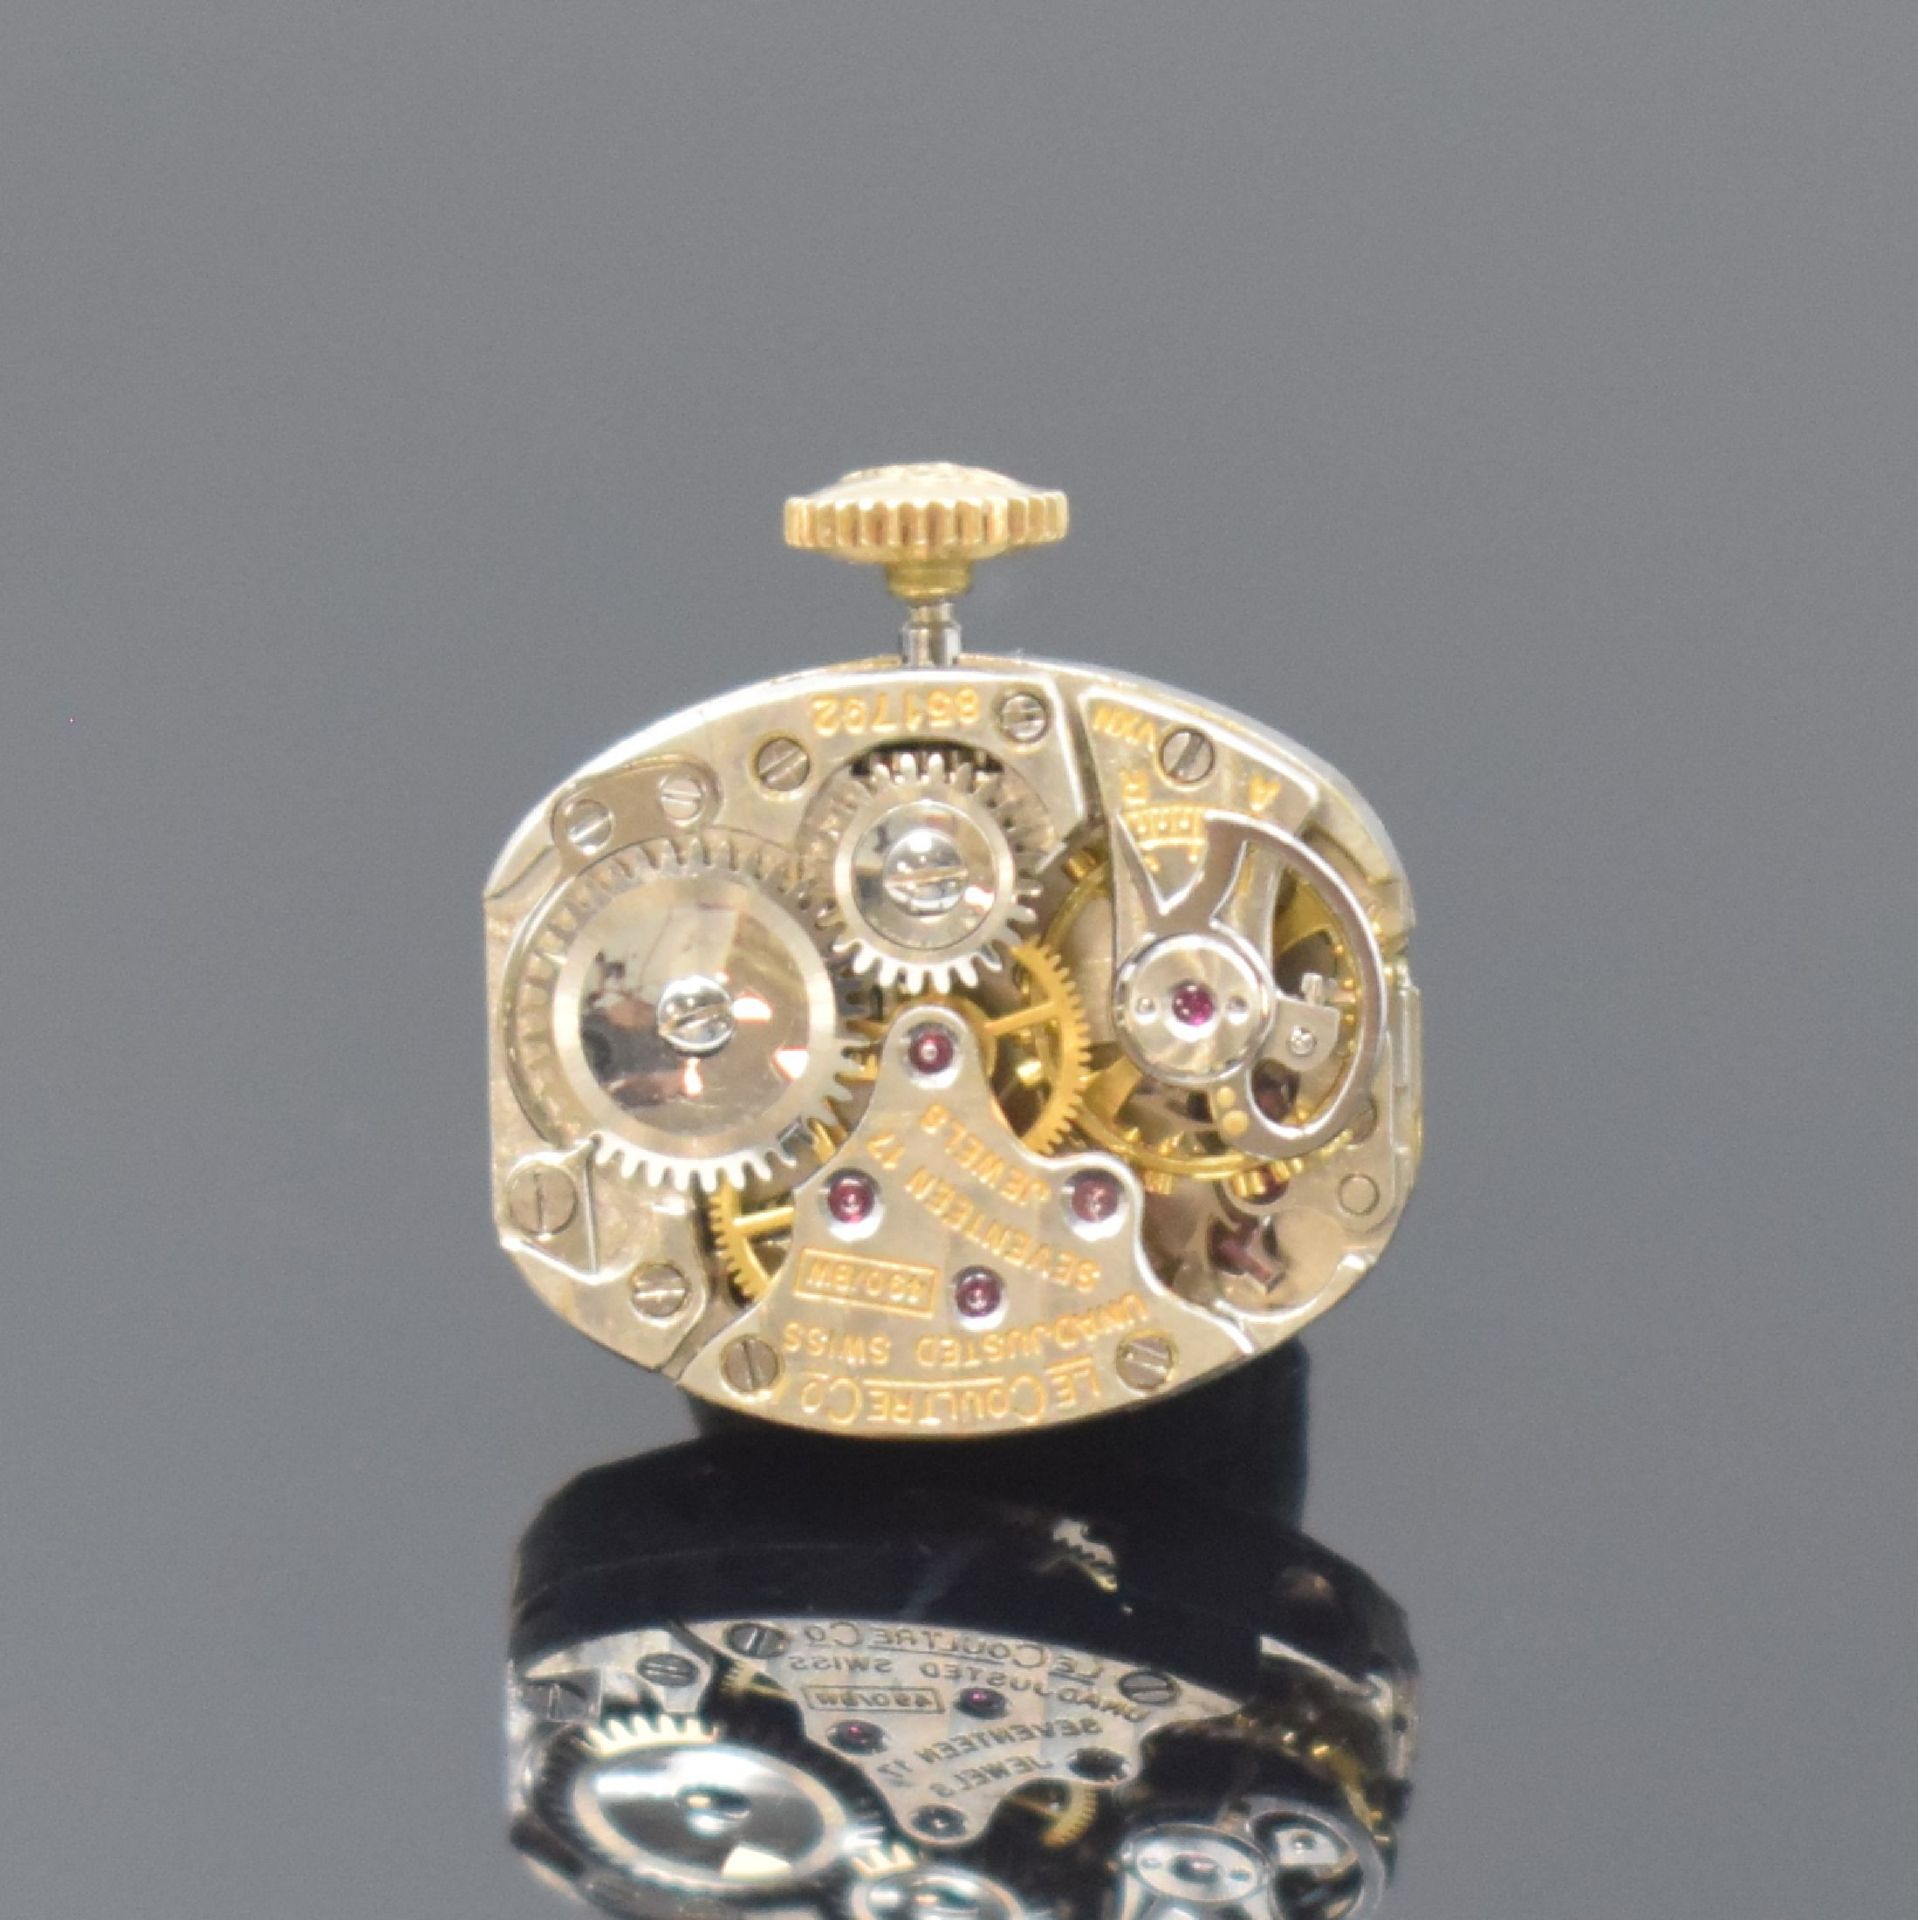 LeCoultre seltene Damenarmbanduhr in Form einer Schleife - Image 6 of 6